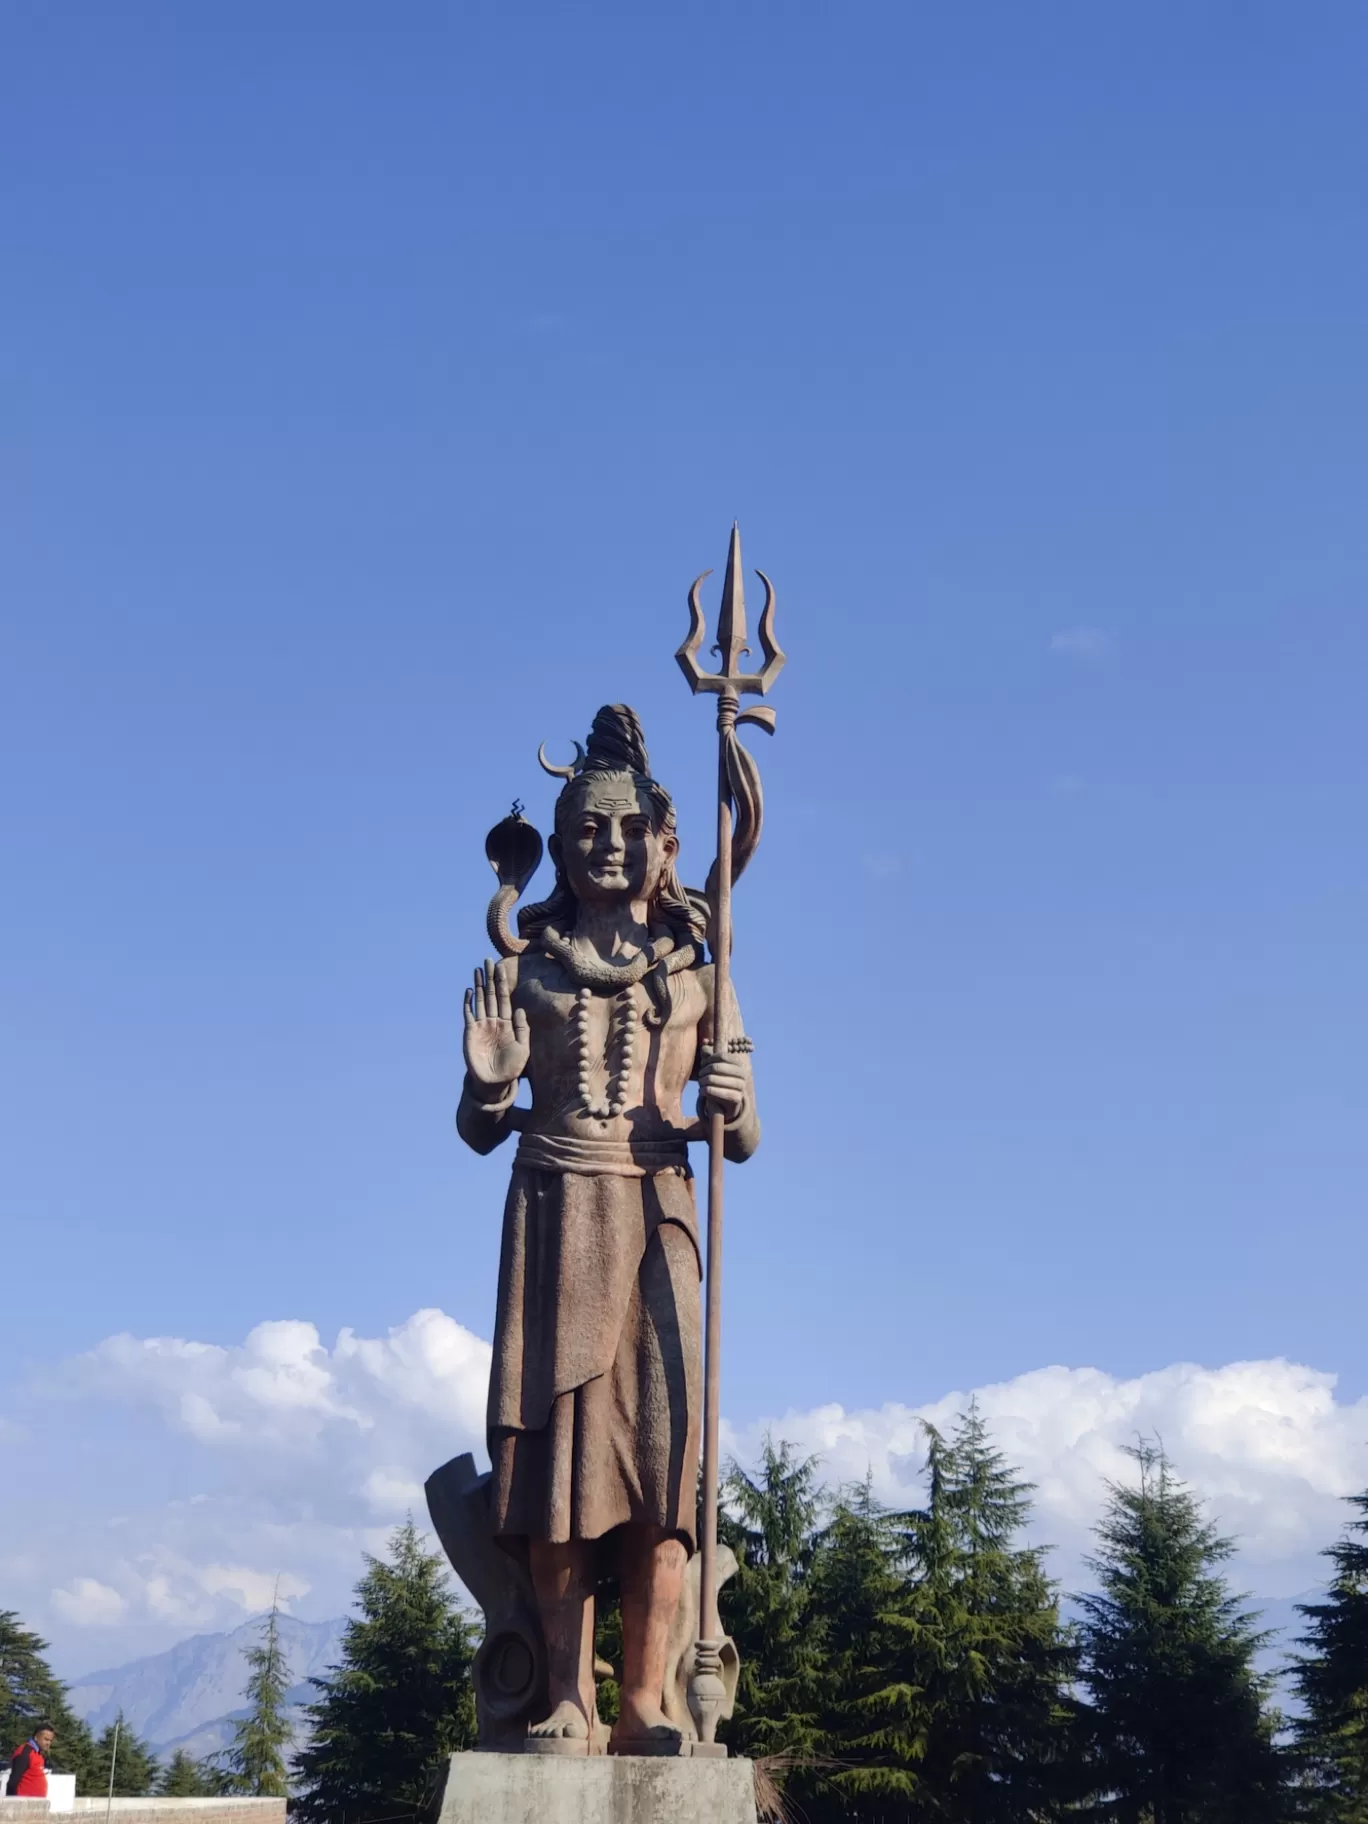 Photo of Lord Shiva Statue By Surbhi Somani